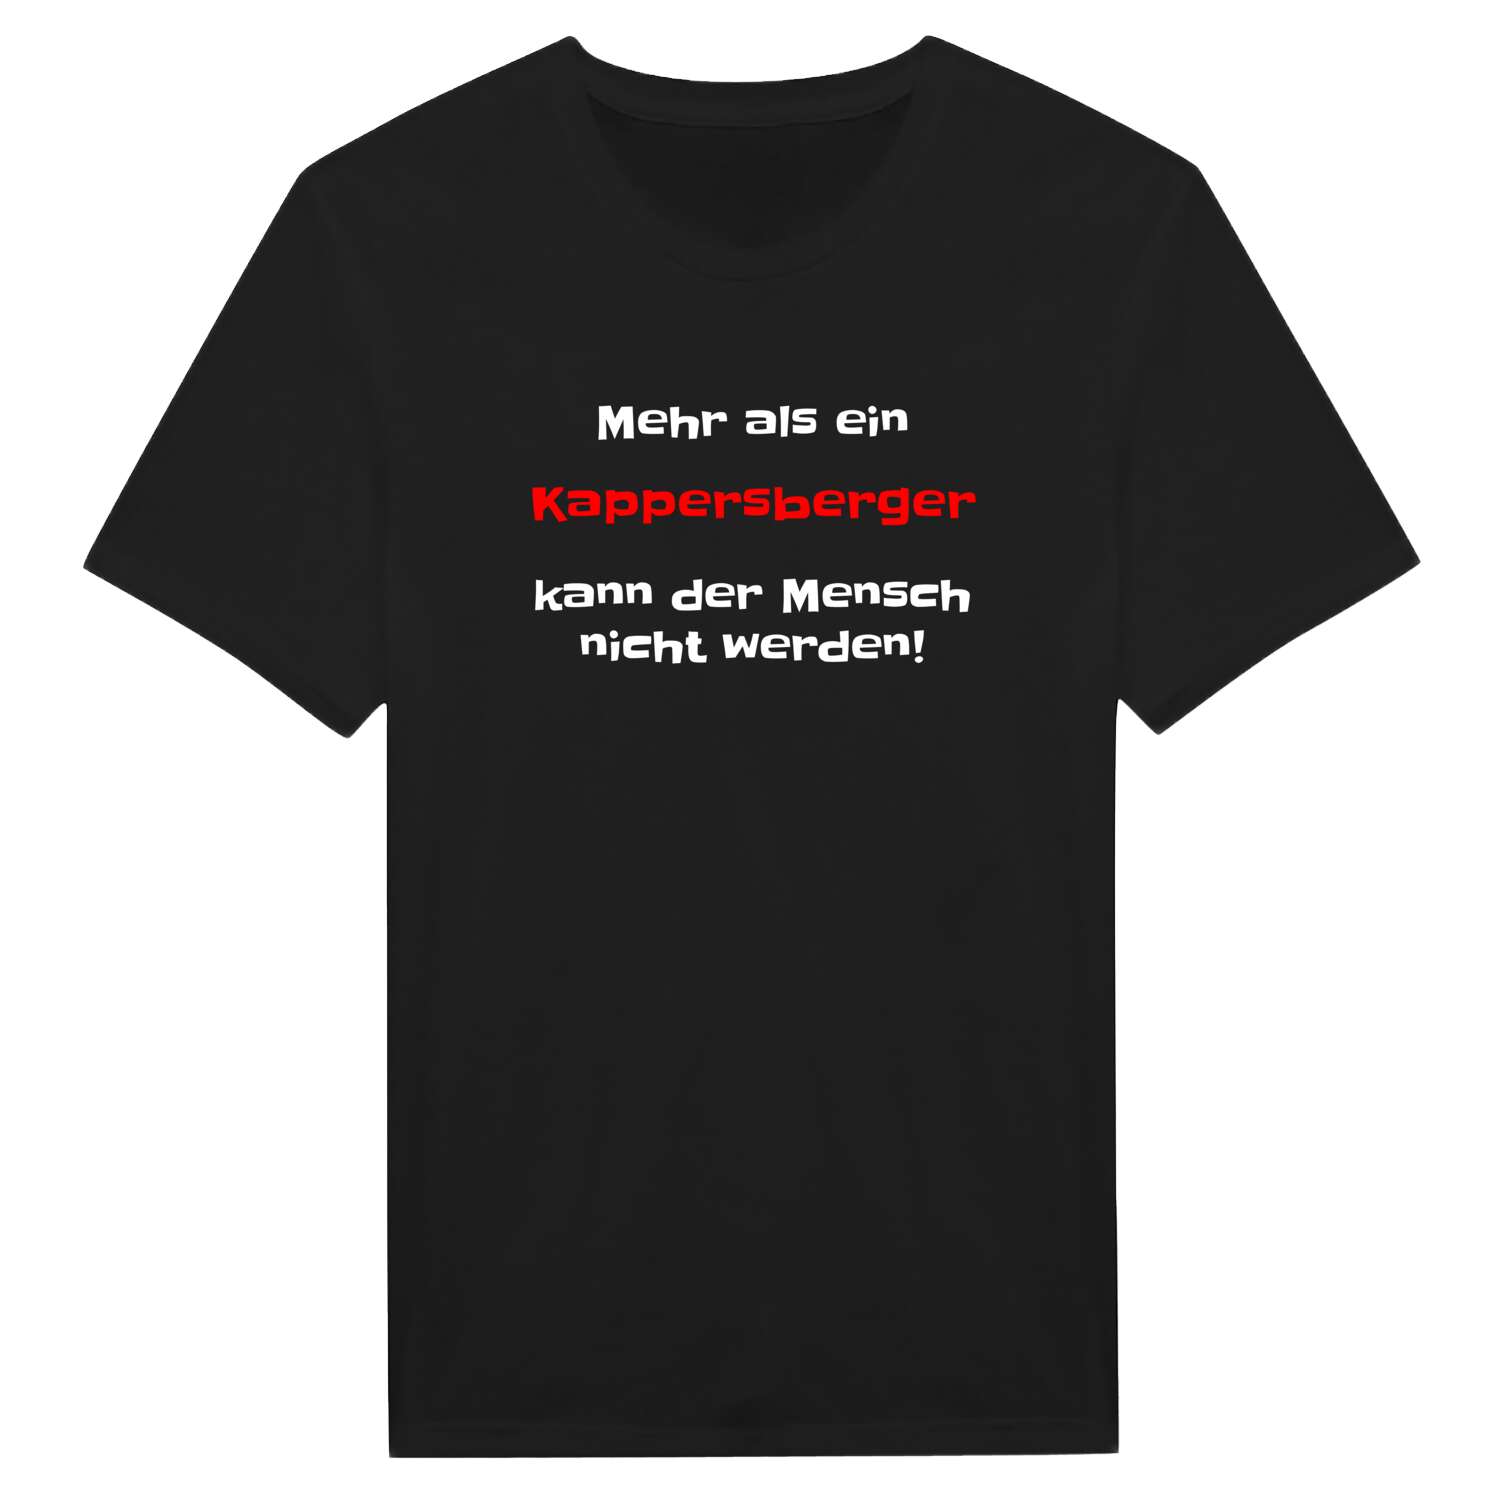 Kappersberg T-Shirt »Mehr als ein«